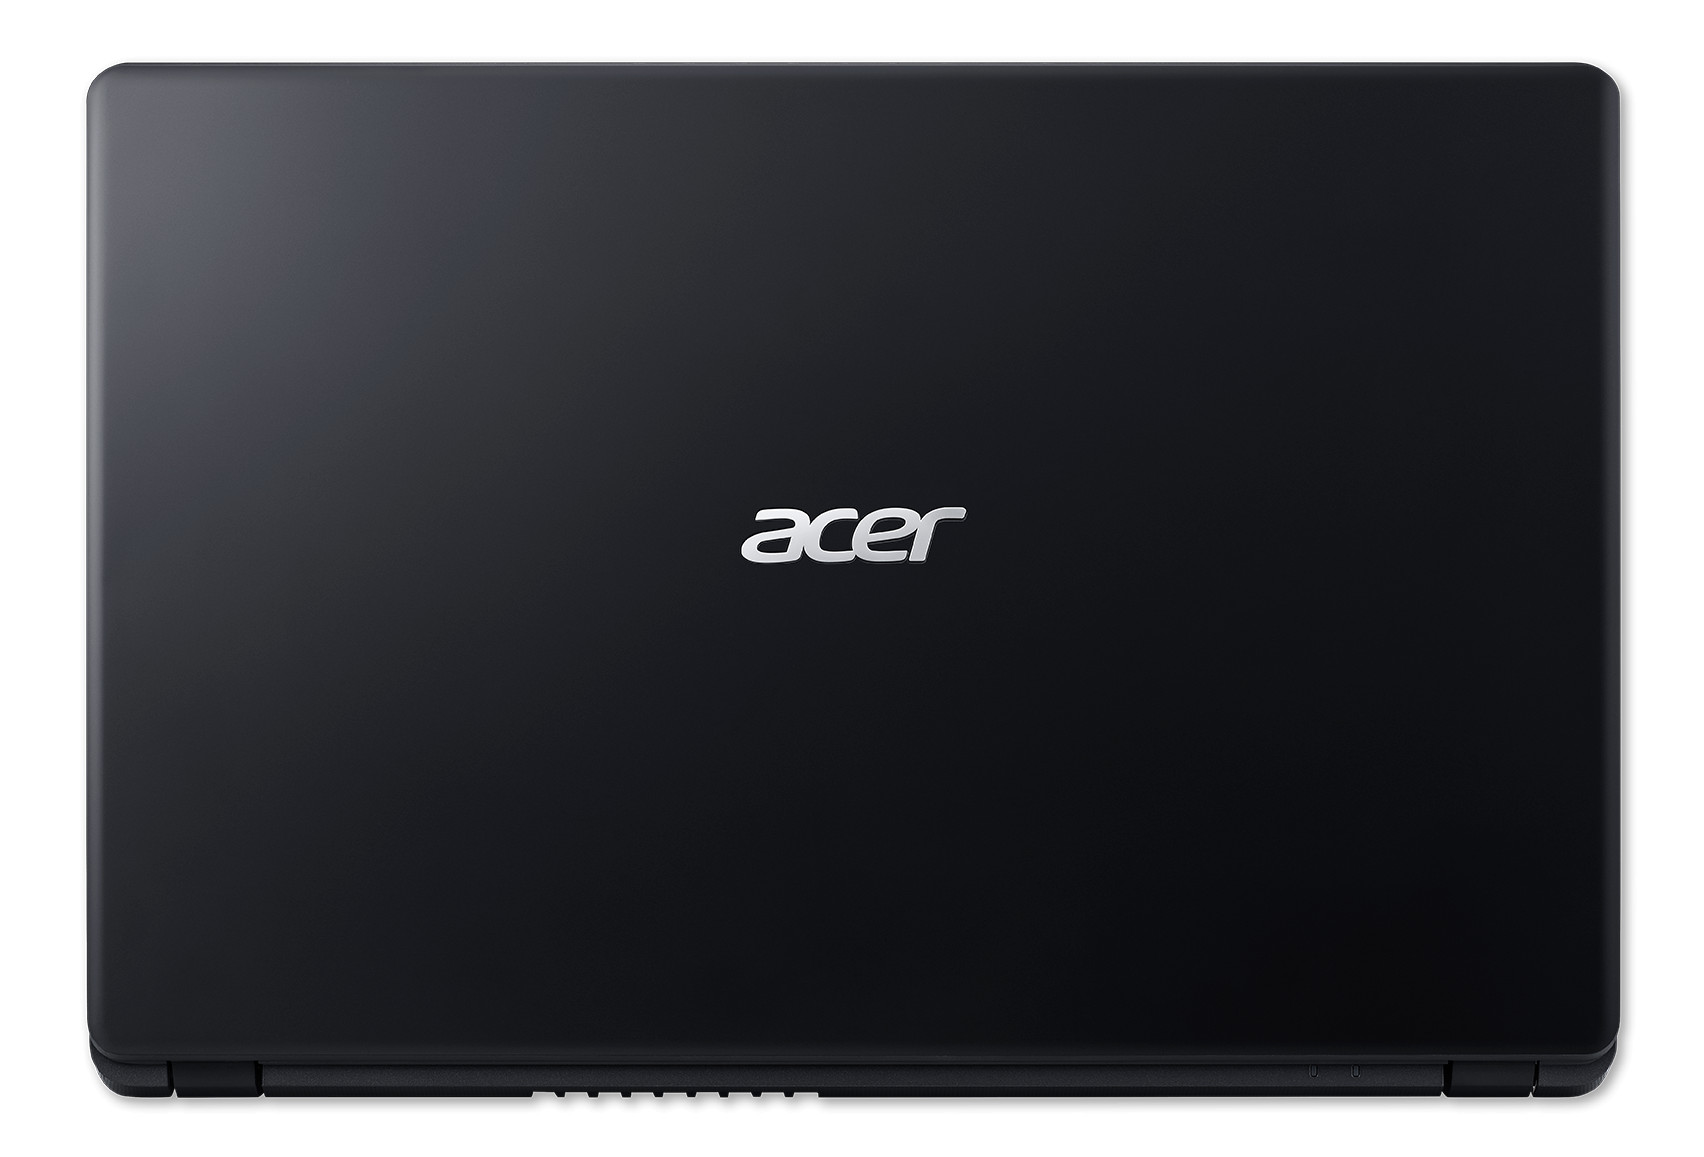 Laptop Acer Aspire 3 A315-54-57PJ/ Core i5-8265U(1.60 GHz/6MB)/ 4GBRAM/256GBSSD/ Intel UHD Graphics/ 15.6FHD/ Webcam/ Wlan ac+BT/ 3cell/ Win 10 Home/ Đen (Shale Black)/ 1Y WTY_NX.HEFSV.004 - Hàng Chính Hãng